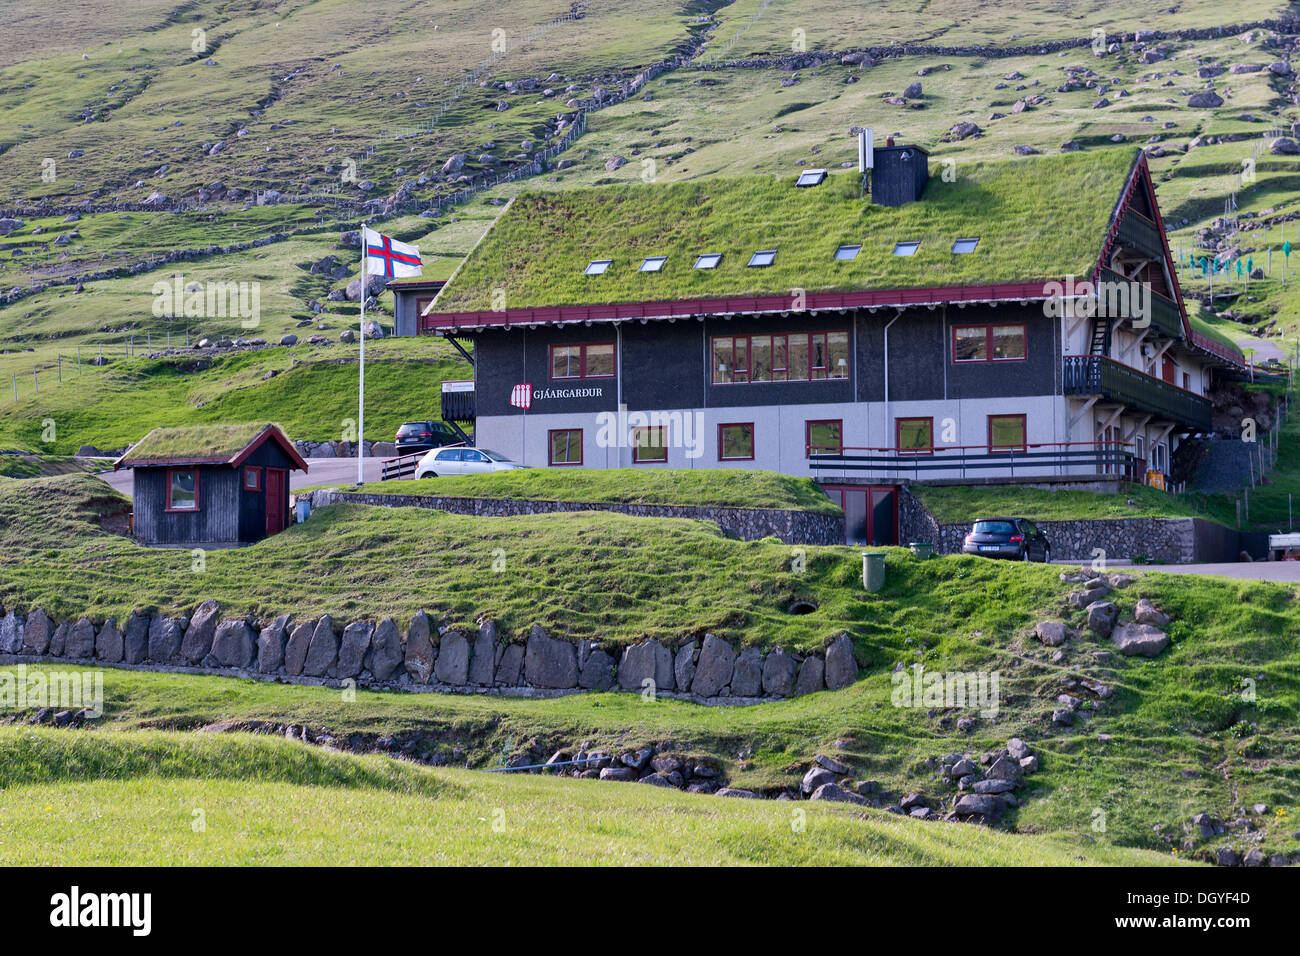 Gjaargardur guesthouse, Gjogv, Eysturoy, Faroe Islands, Denmark Stock Photo